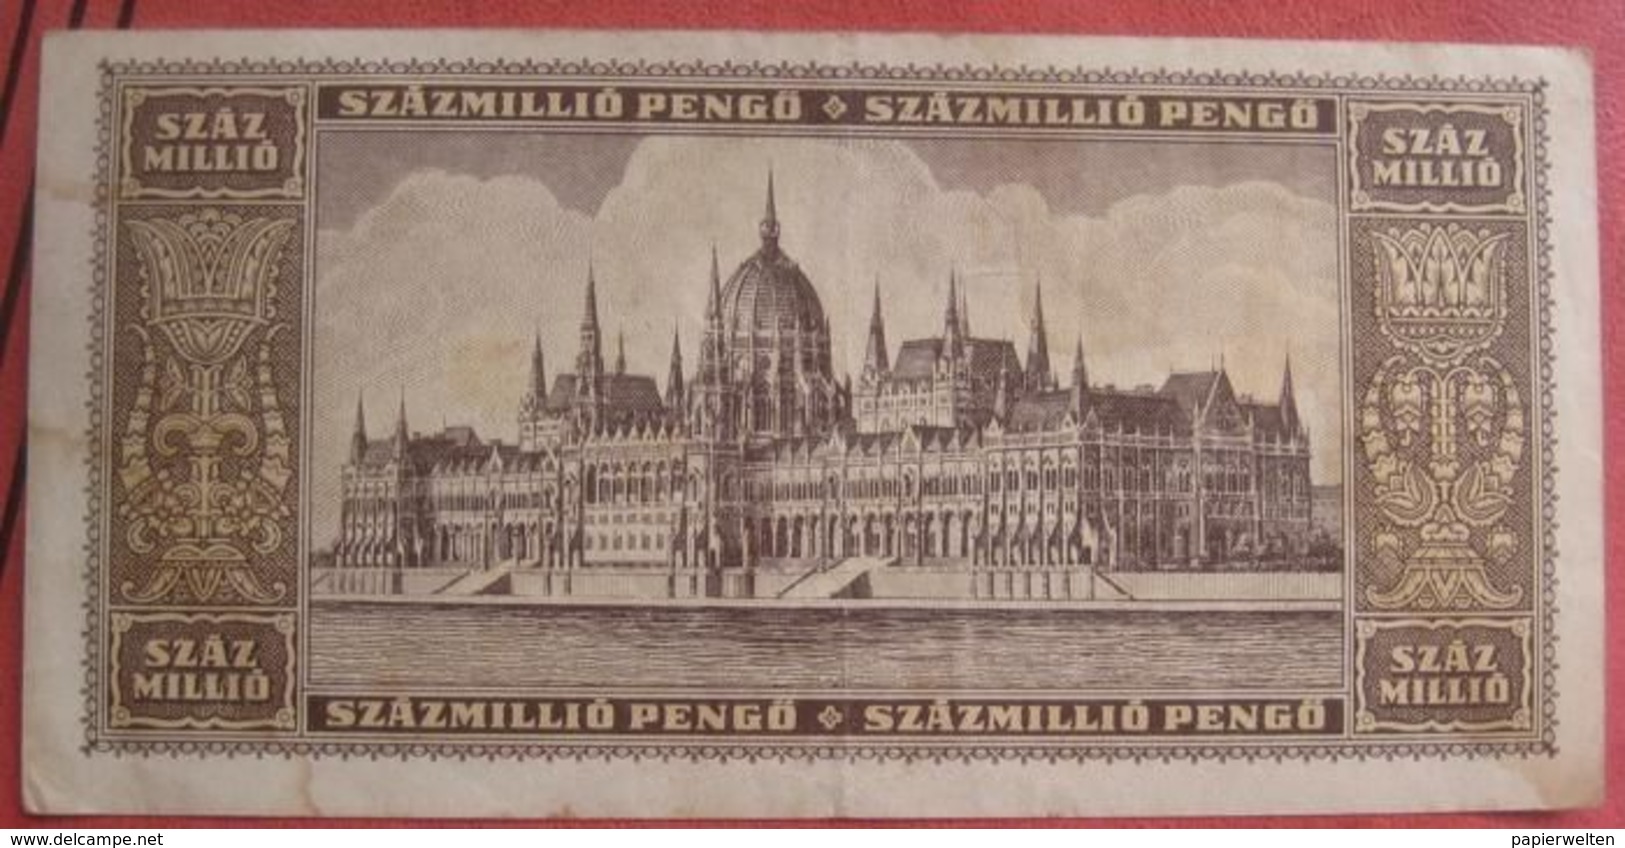 100 000 000 / SzazMillio Pengö 1946 (WPM 130) - Hungría